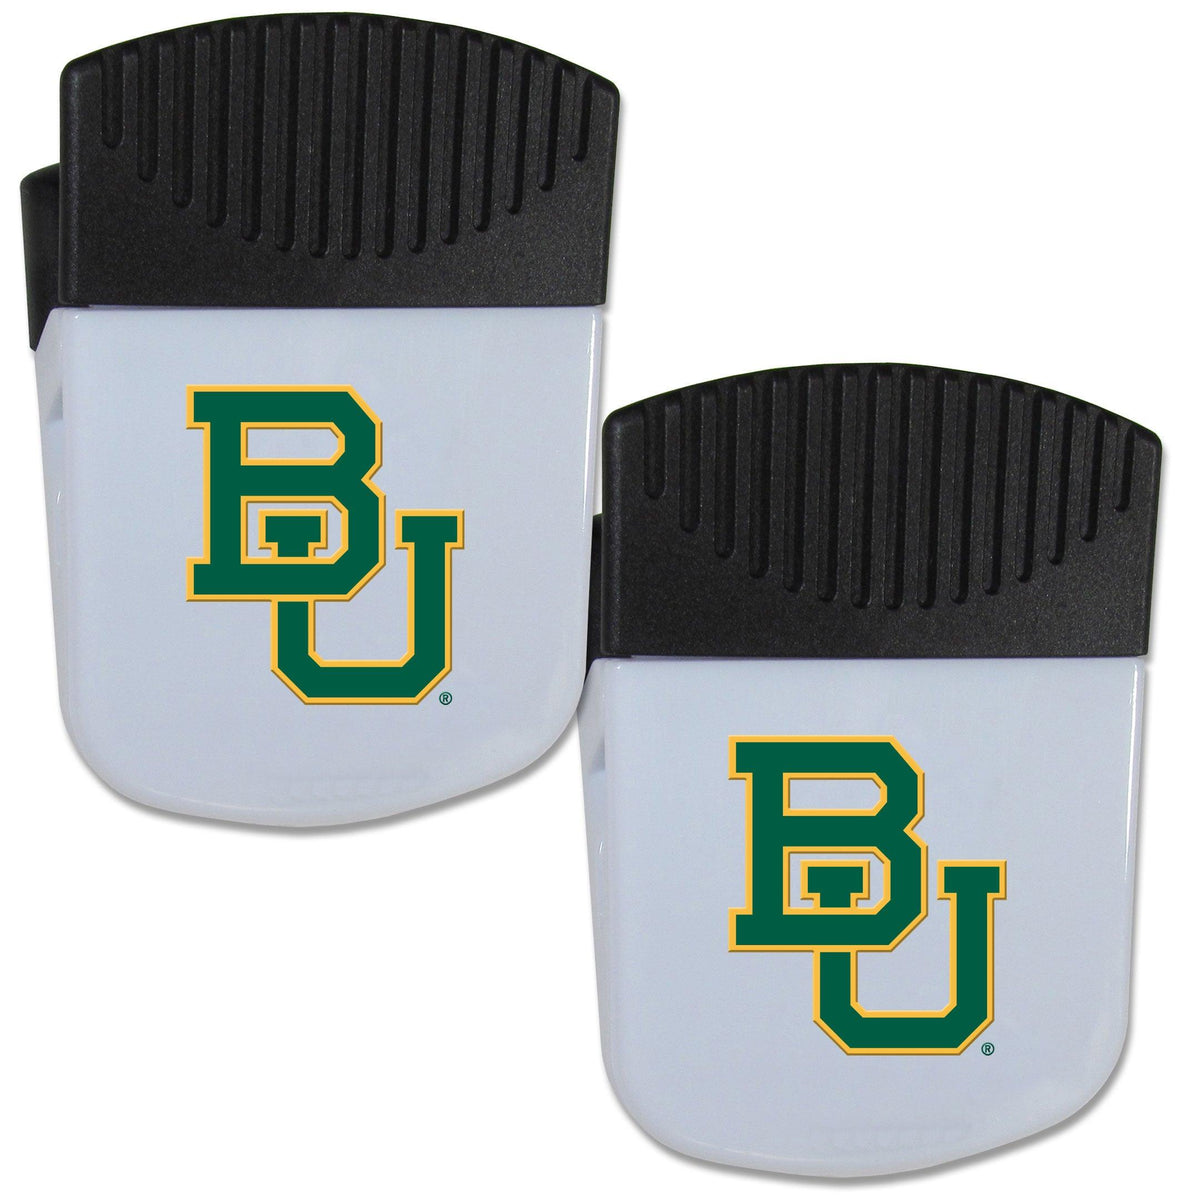 Baylor Bears Chip Clip Magnet with Bottle Opener, 2 pack - Flyclothing LLC